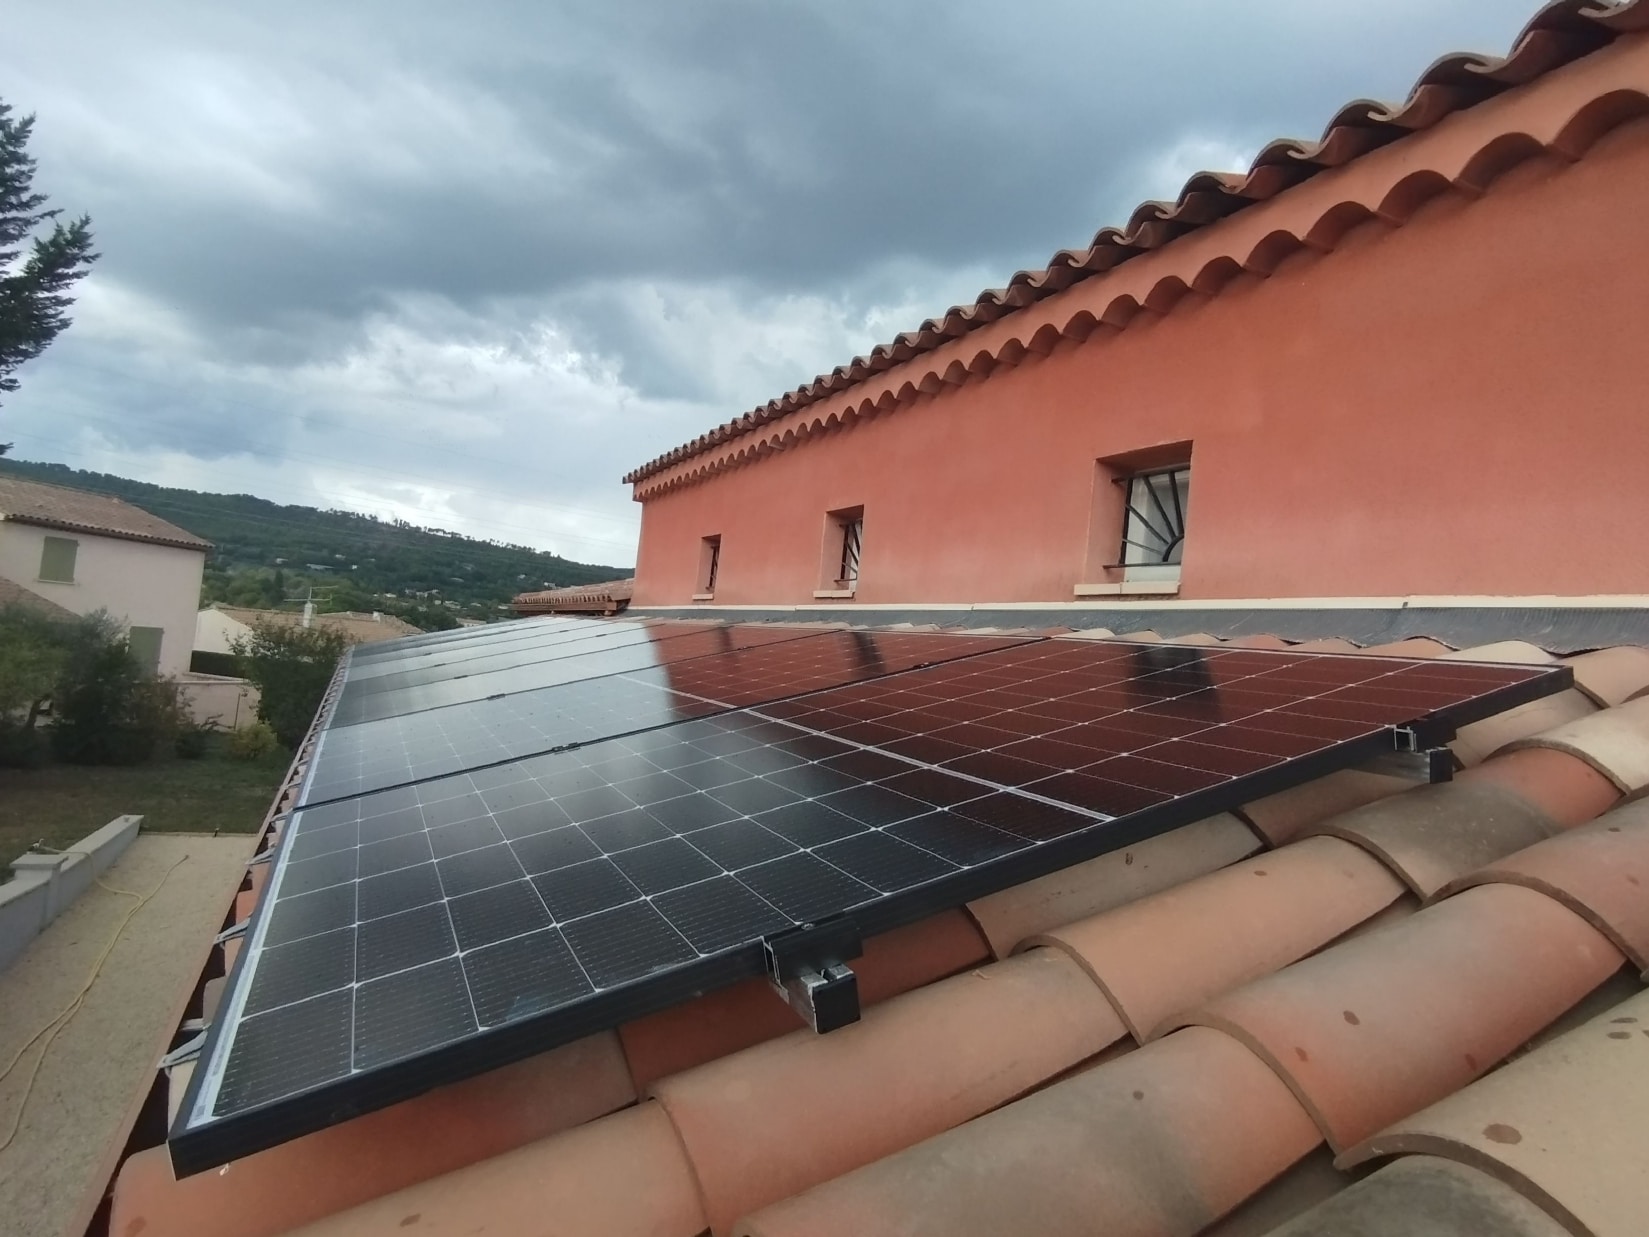 <span class="popup-mms-9">Installations de panneaux solaires sur toiture inclinée - 3280W</span>